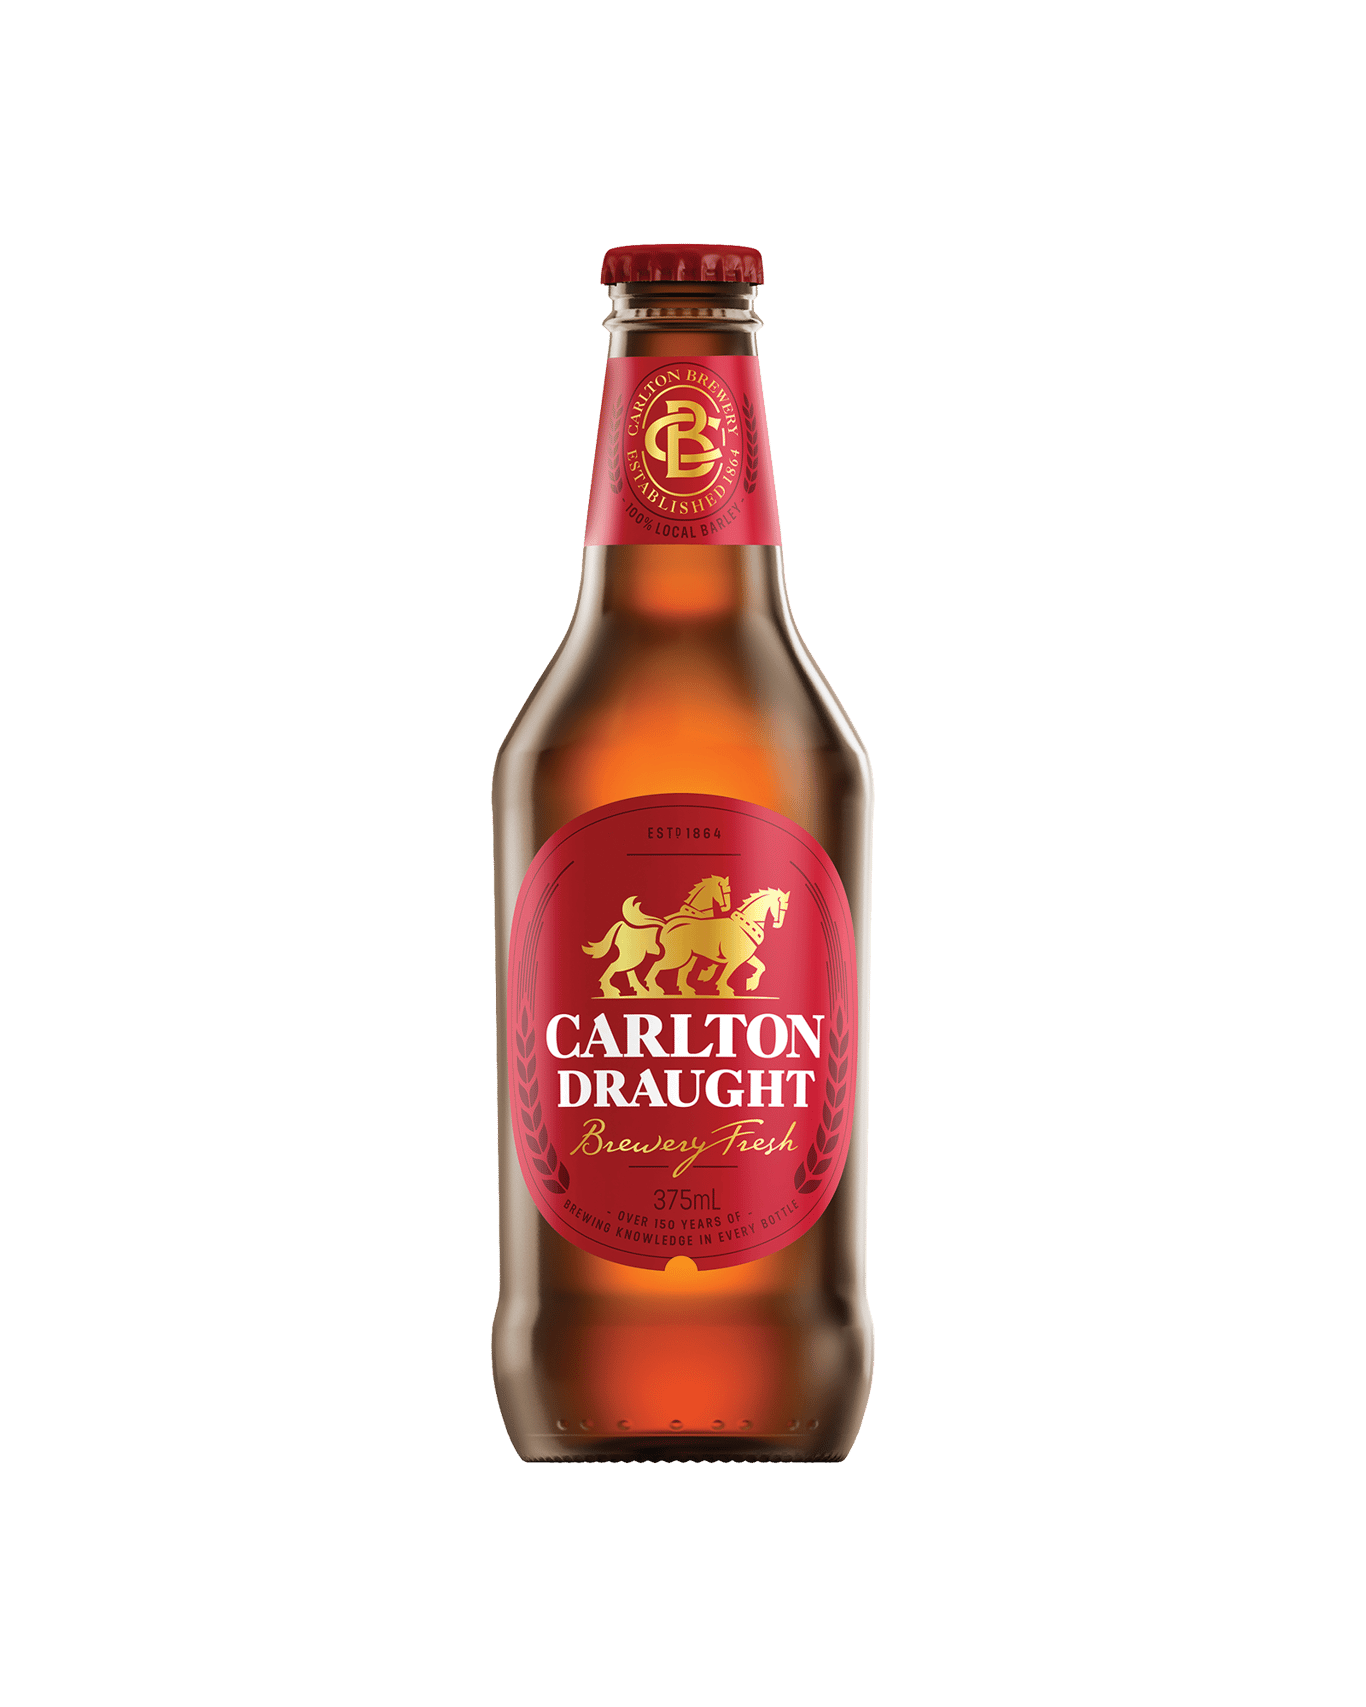 Calories in Carlton Draught Beer